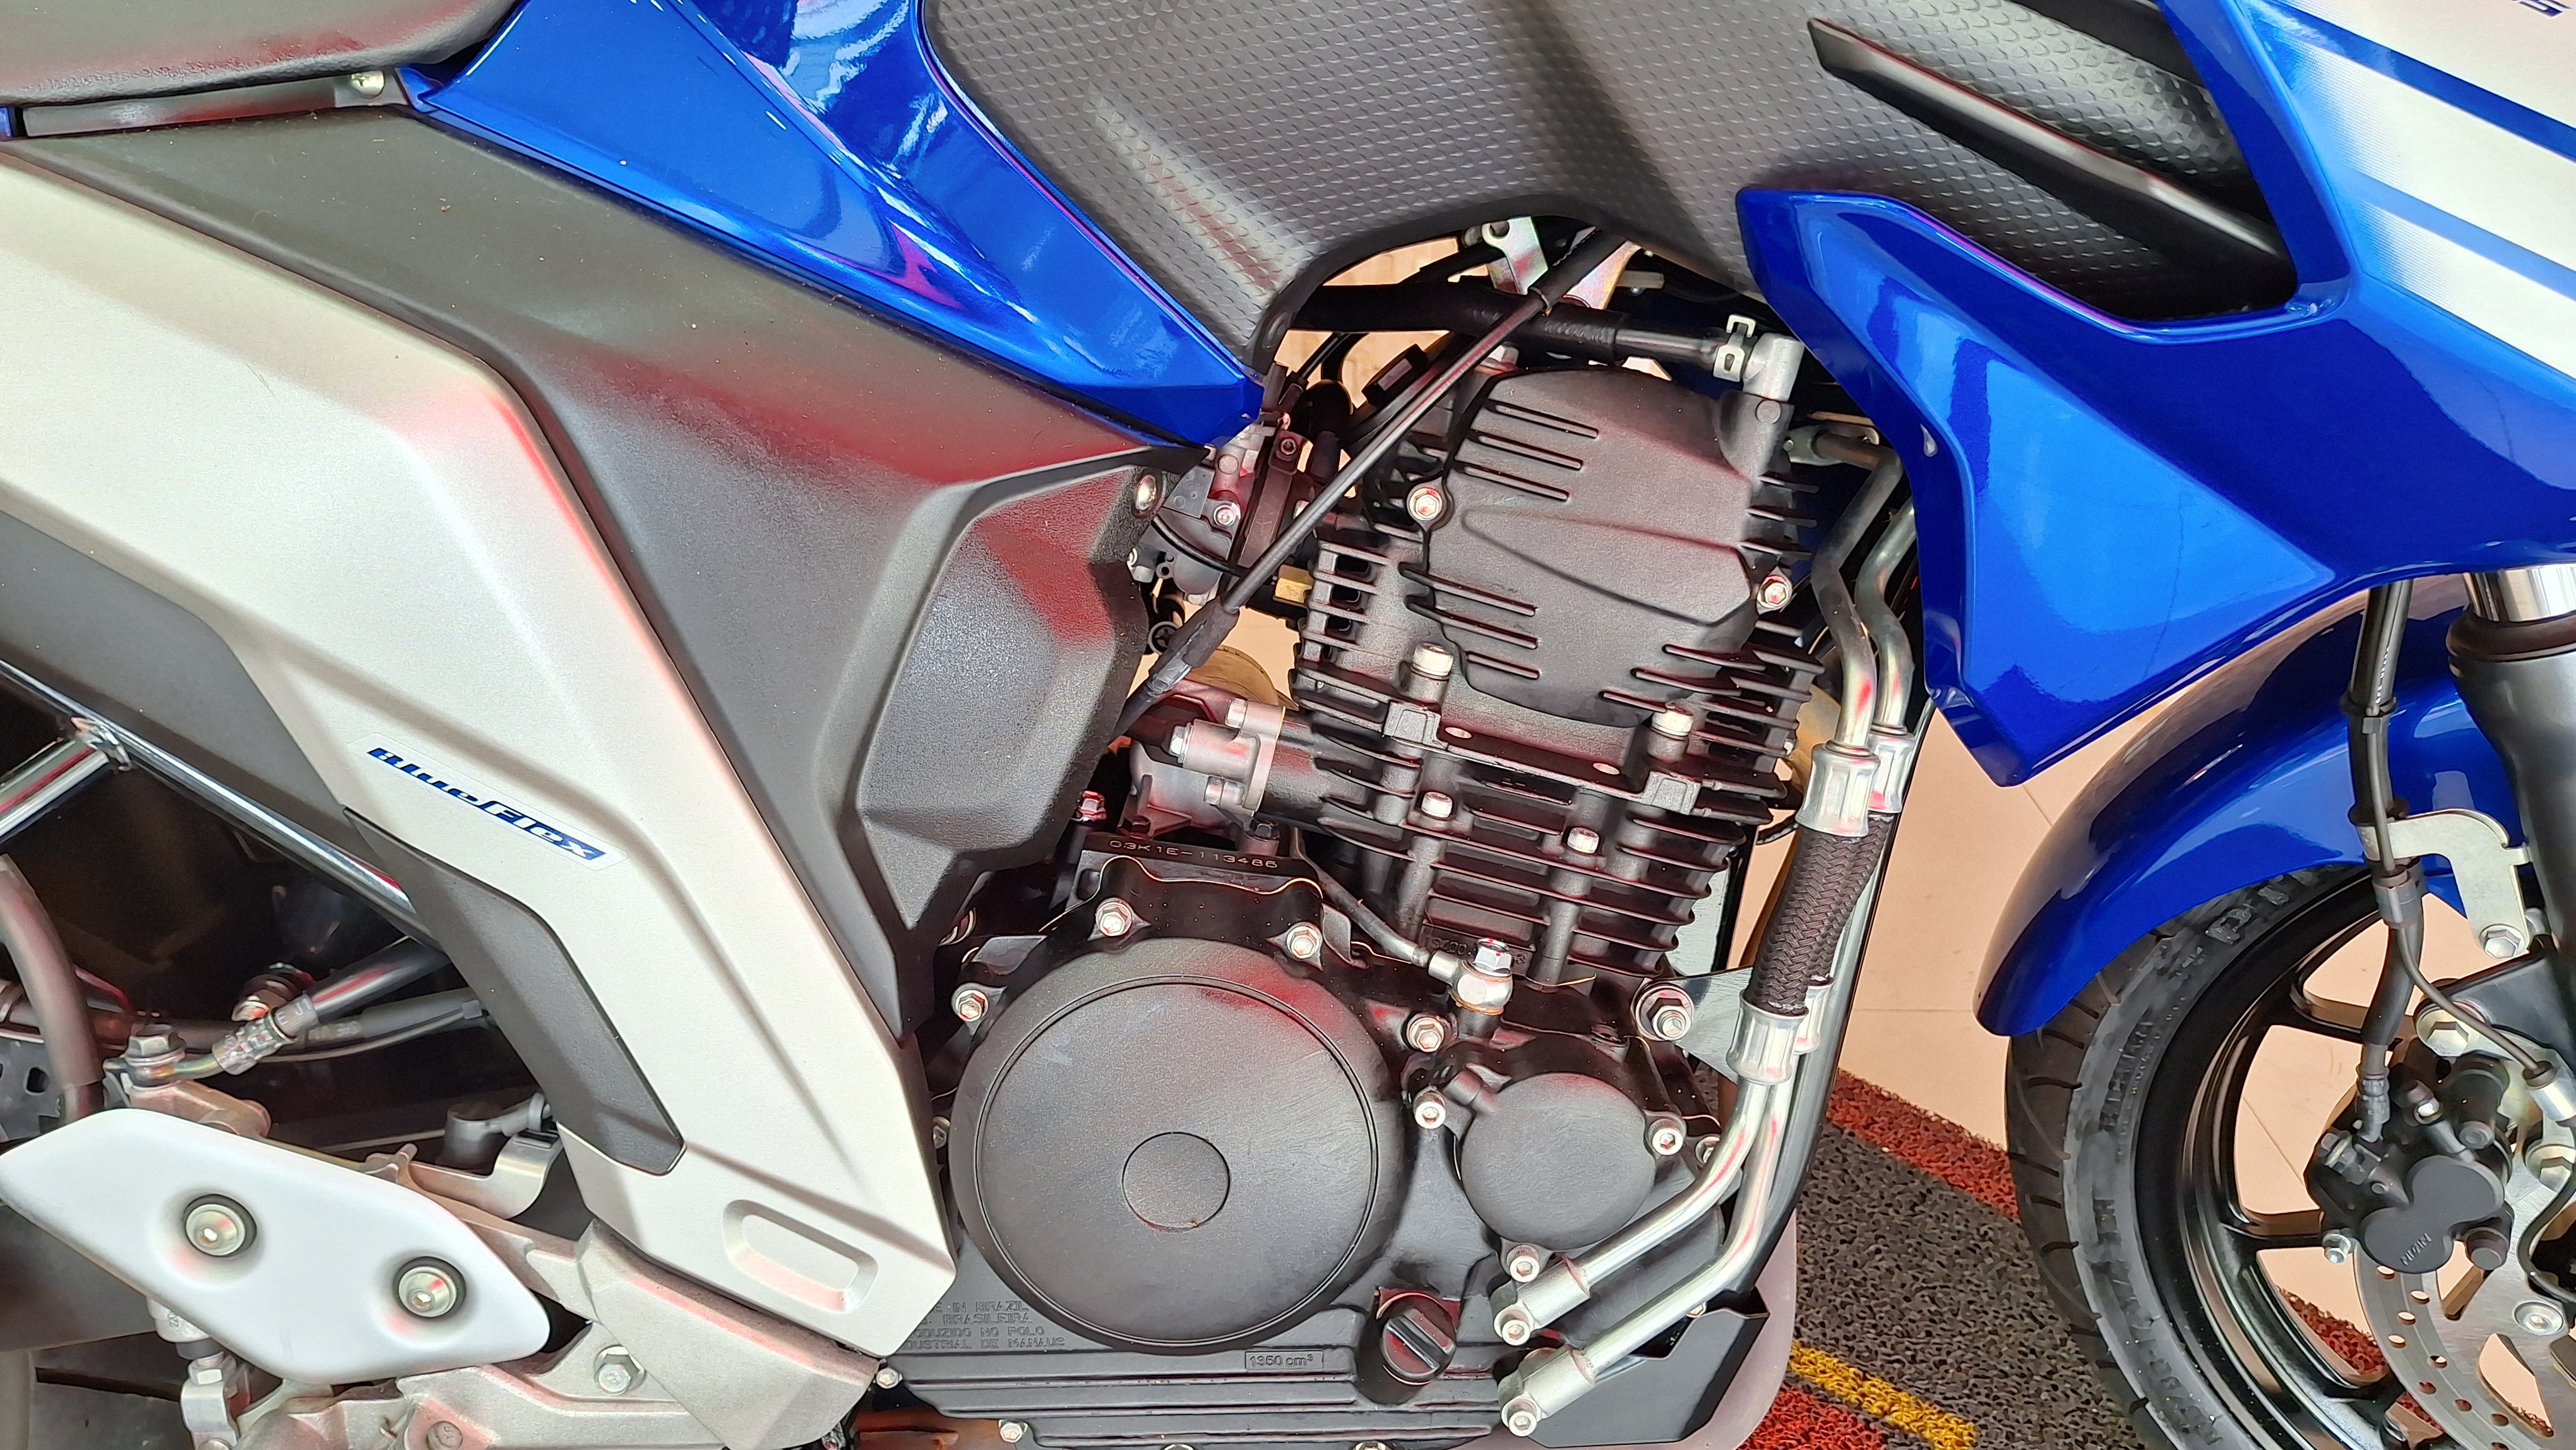 Yamaha FZ25 Azul